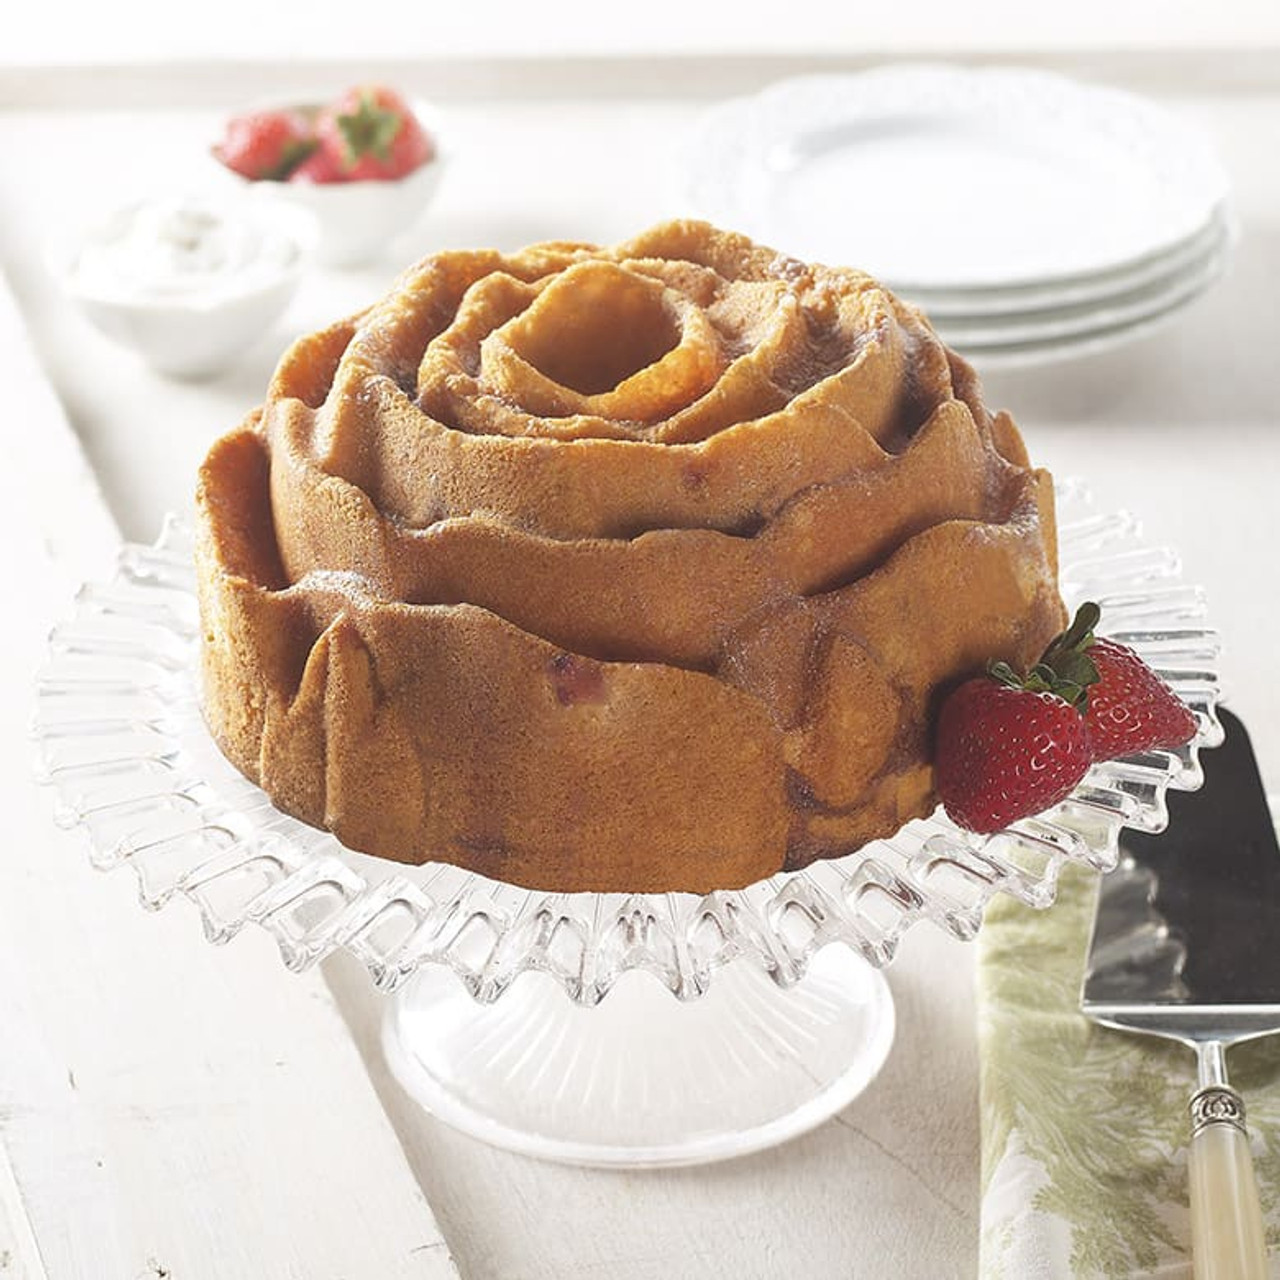 Rose Bundt Cake Pan